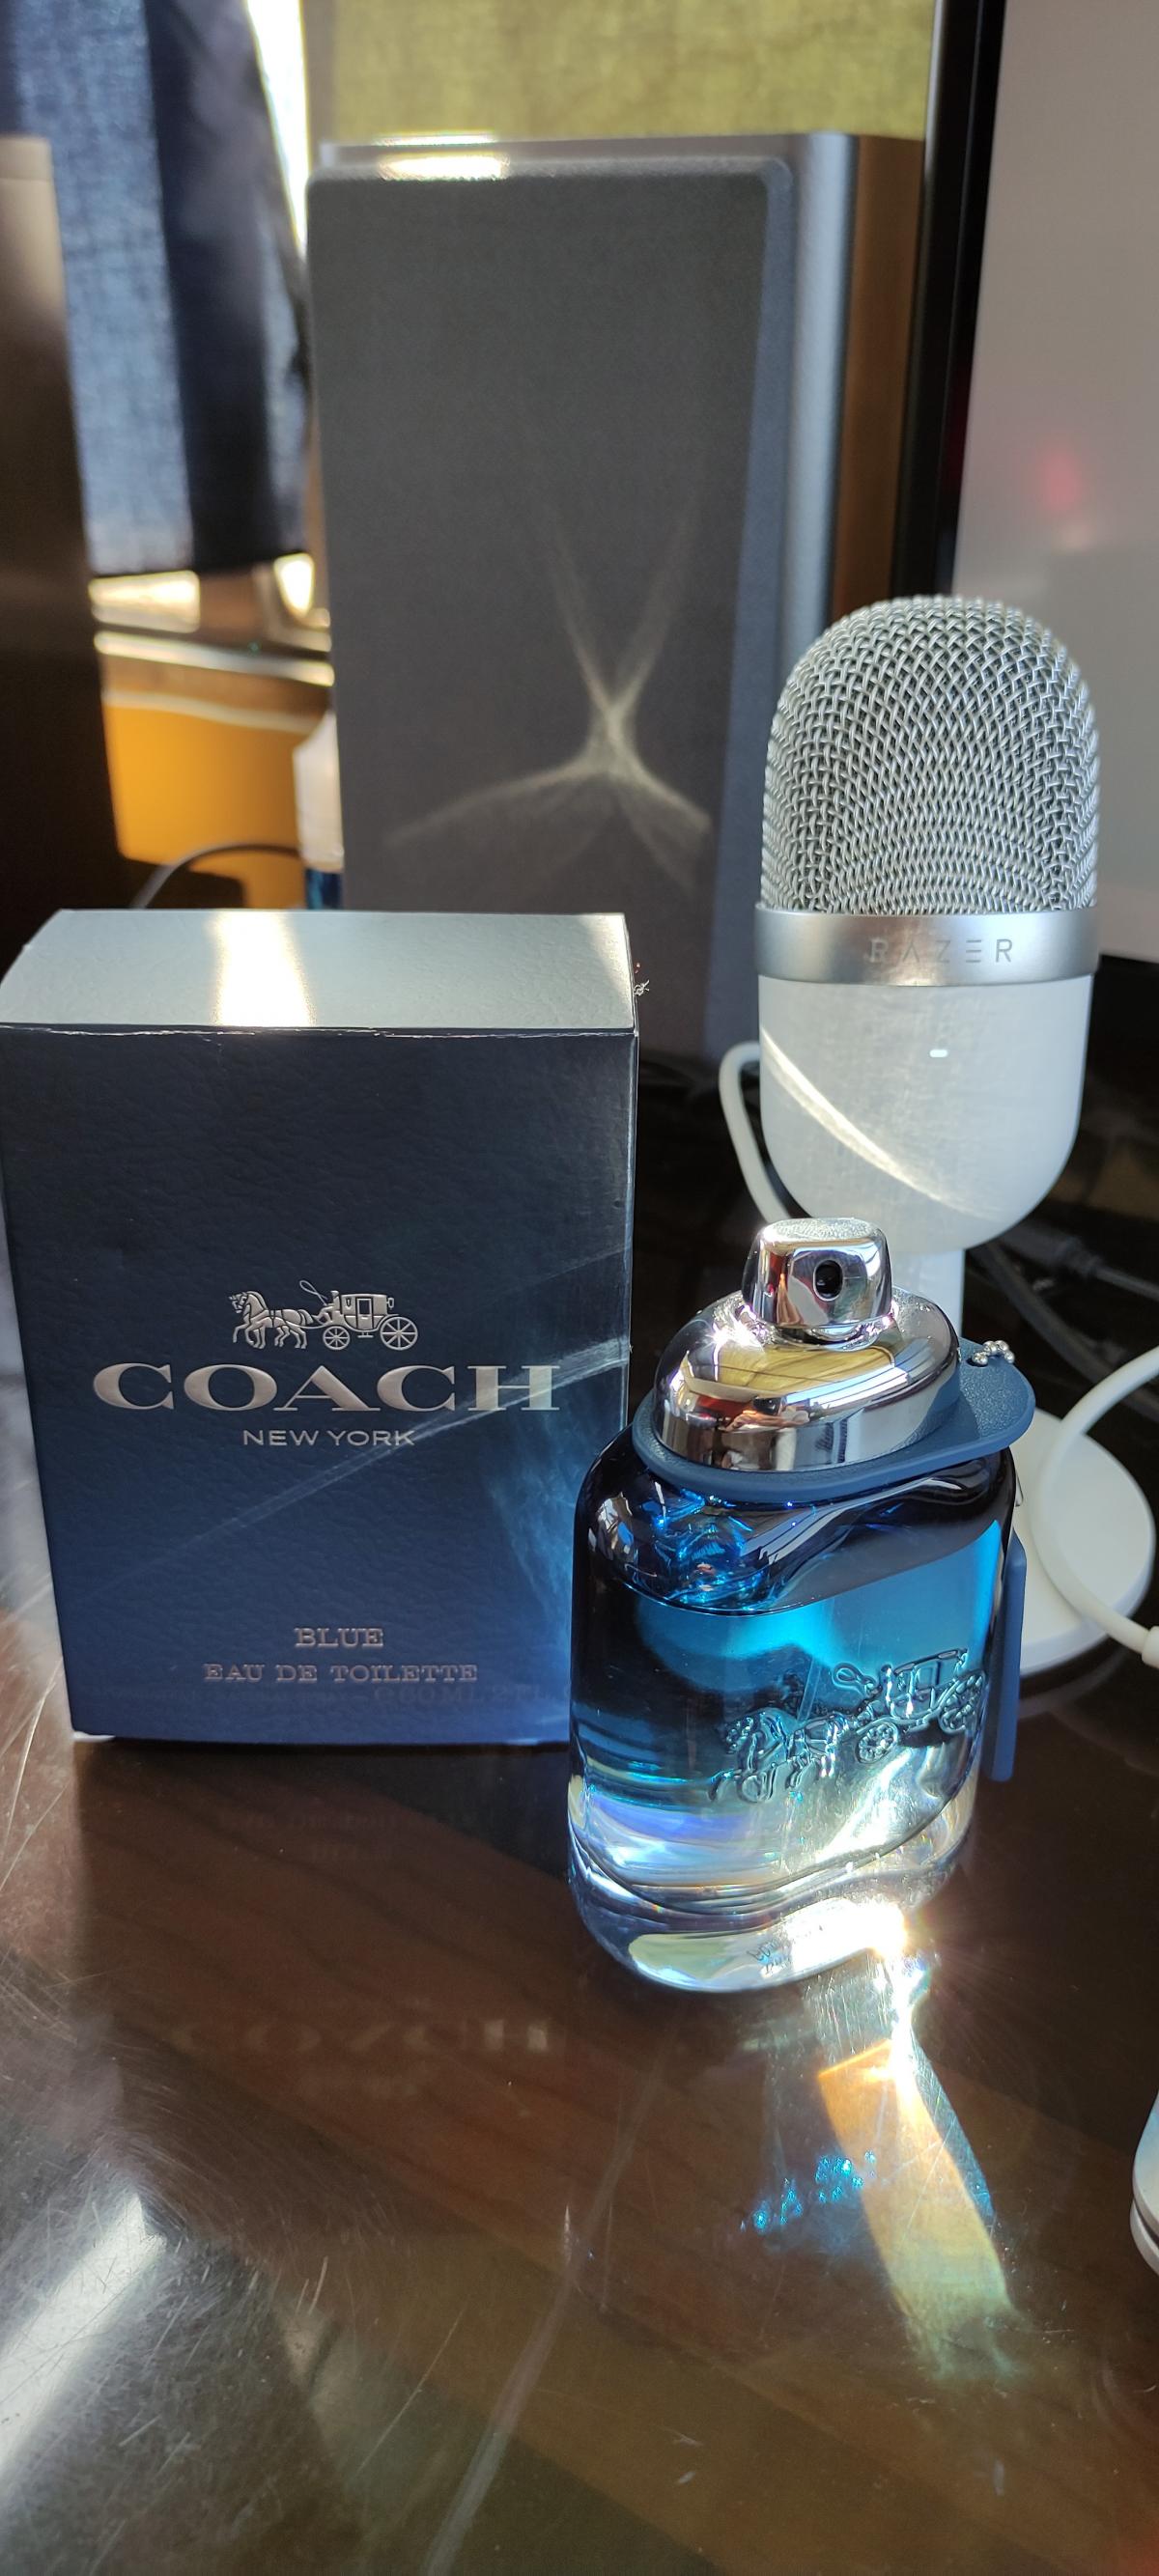 Coach Blue Coach cologne - a fragrance for men 2020